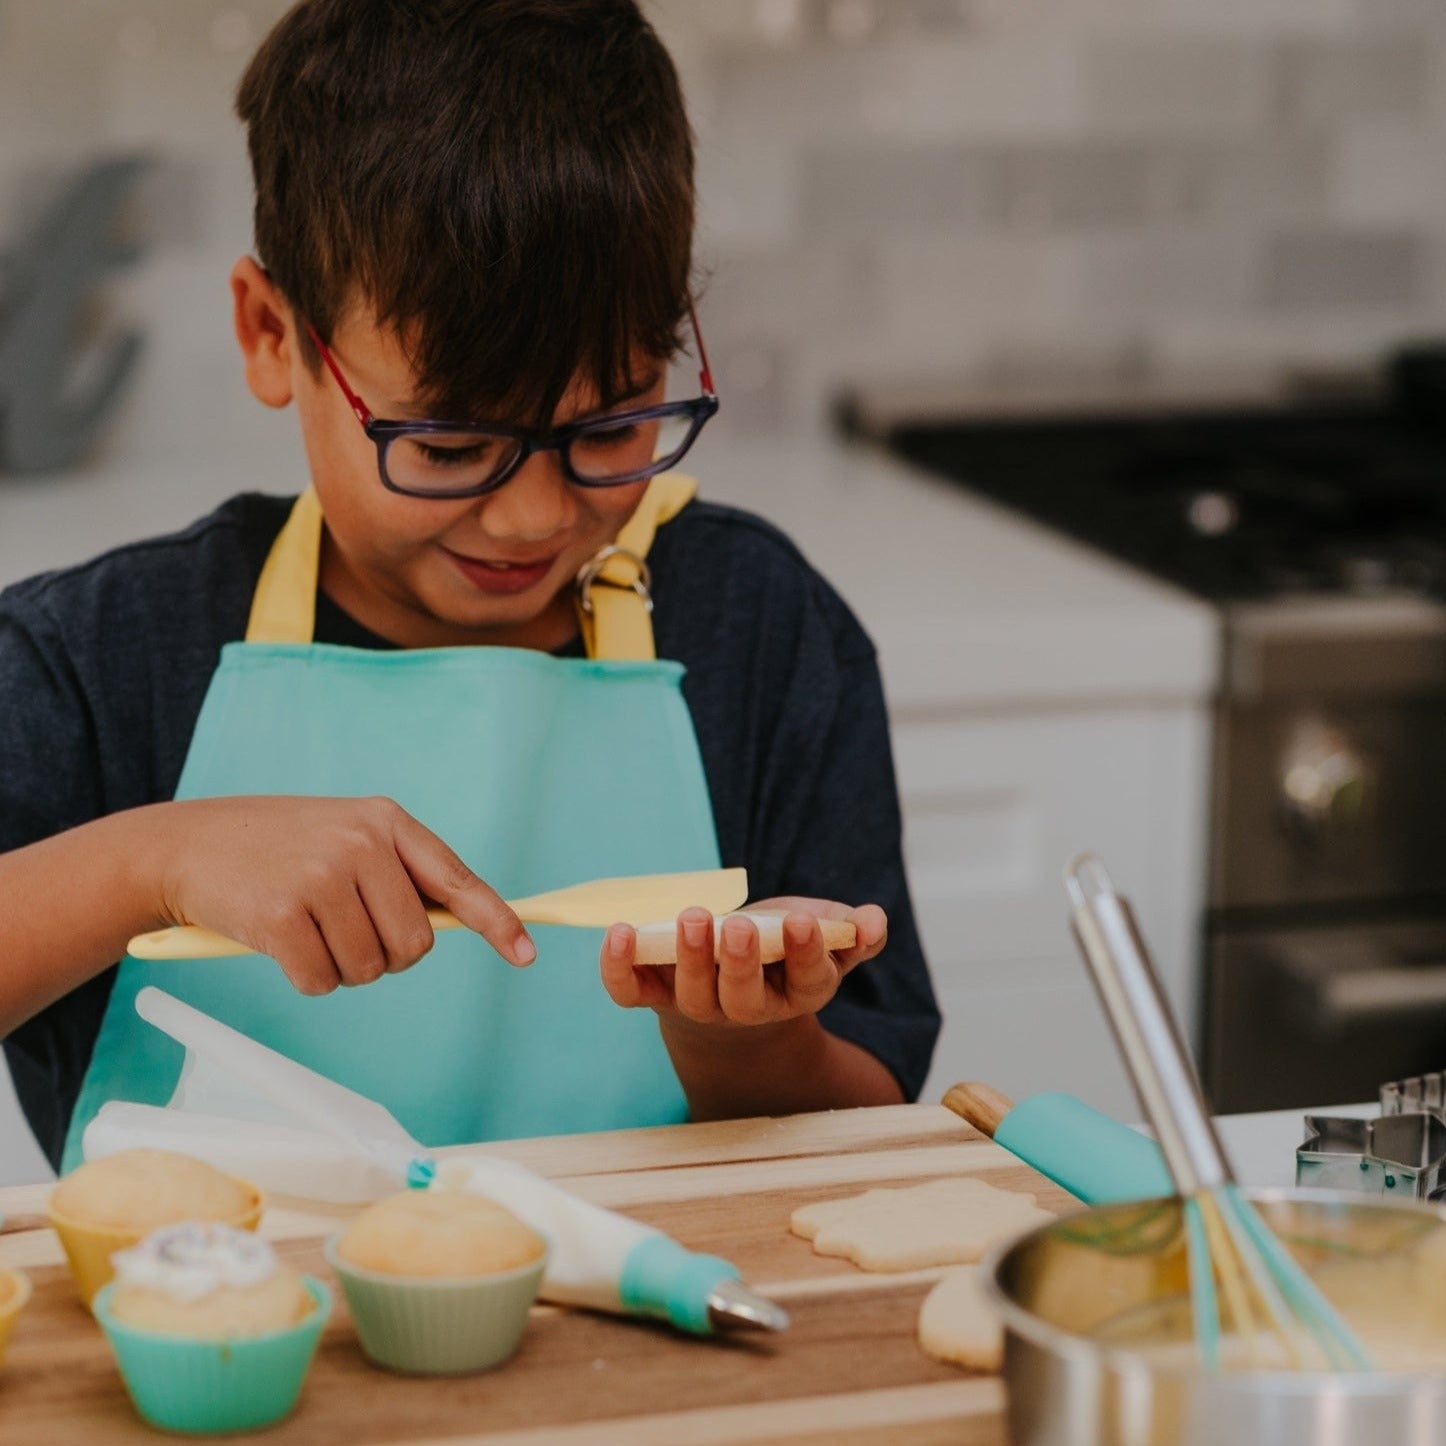 Kids Cooking Cutter Set Safe Reusable Plastic Toddler Children